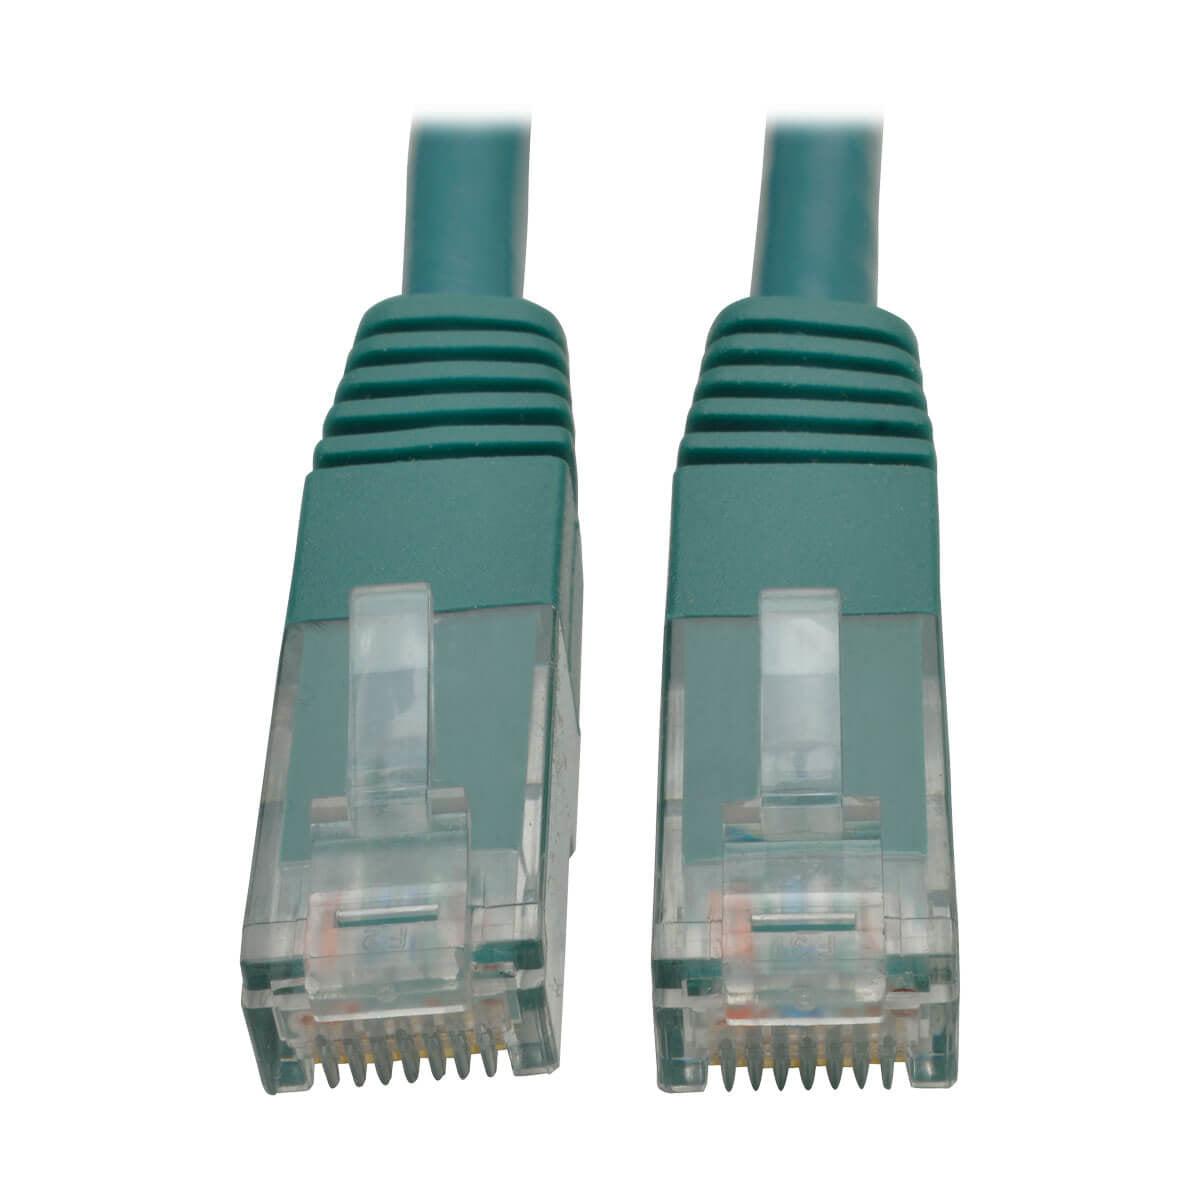 Tripp Lite N200-035-Gn Cat6 Gigabit Molded (Utp) Ethernet Cable (Rj45 M/M), Green, 35 Ft. (10.67 M)